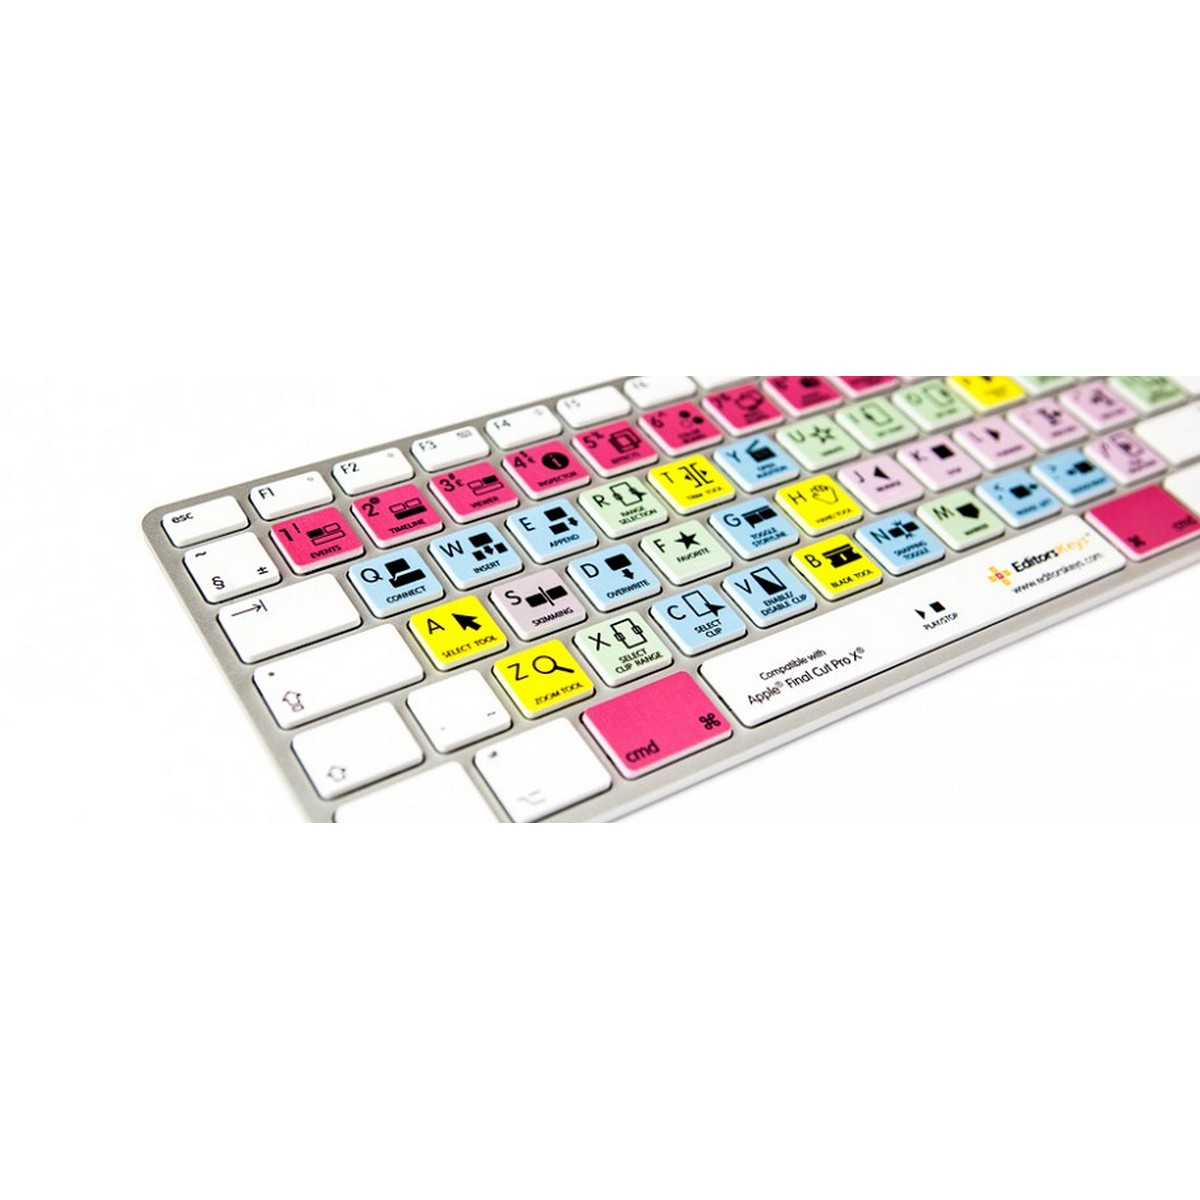 Editors Keys Dedicated Keyboard for Final Cut Pro X | Apple Shortcut Wired Keyboard